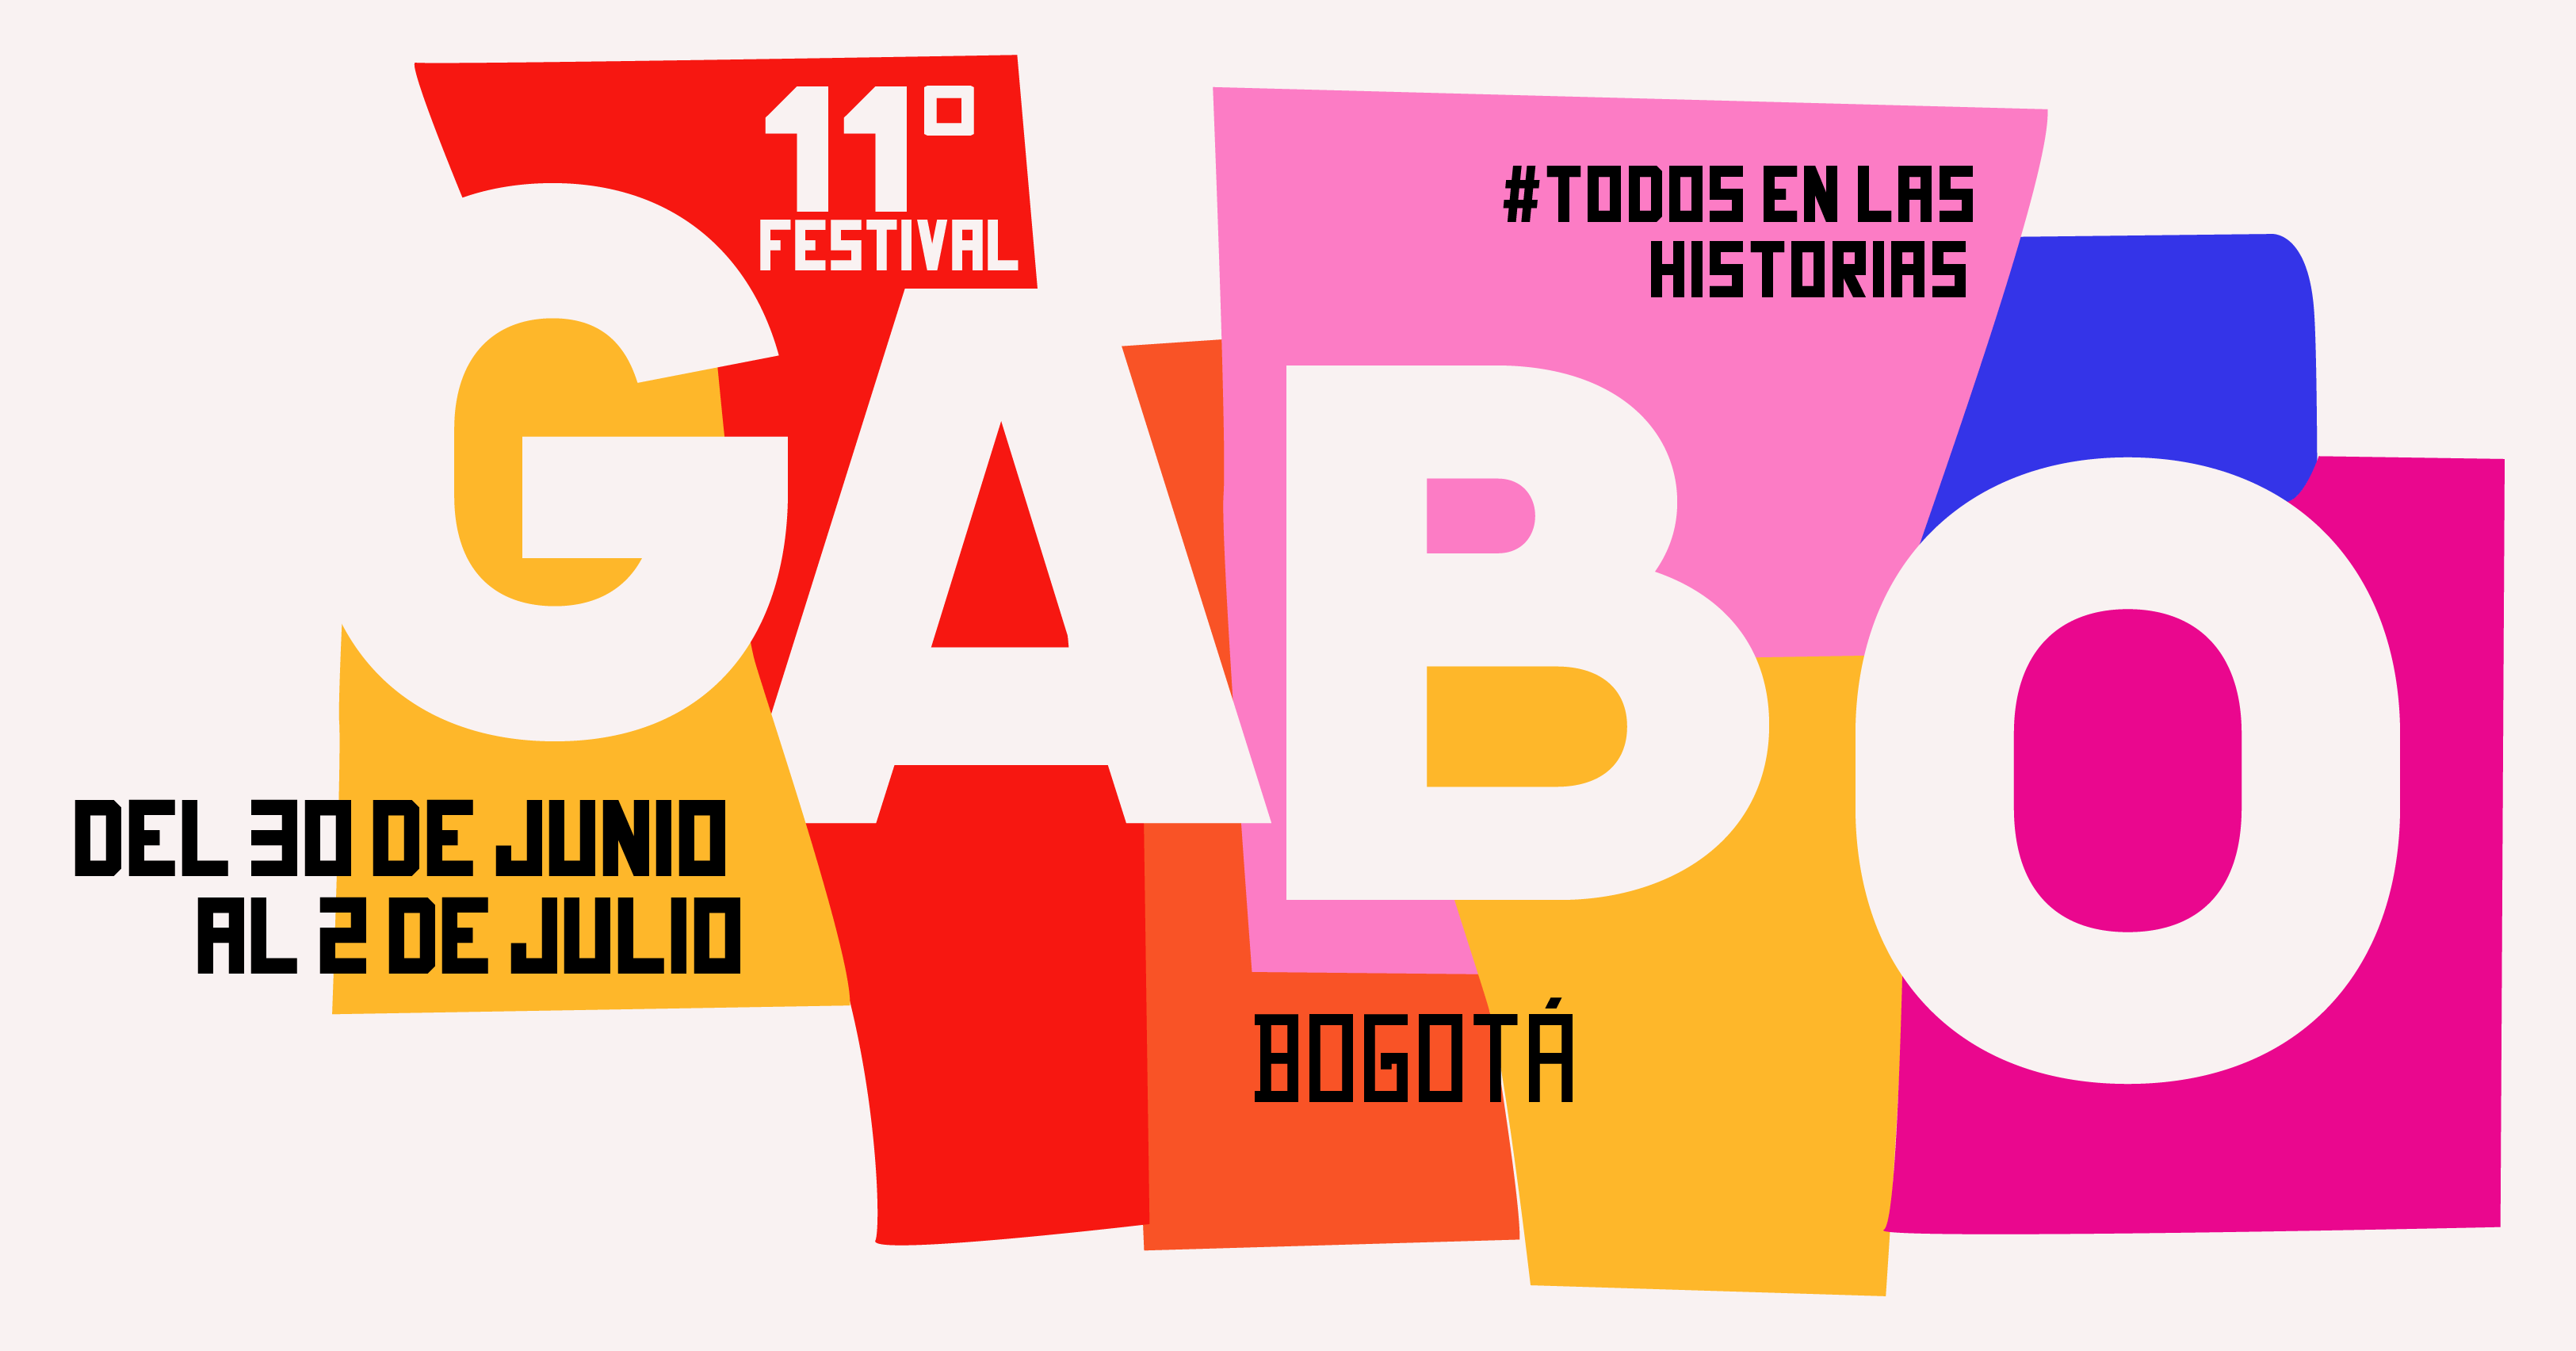 Inteligencia Artificial y amenazas a la libertad de expresión llegan al Festival Gabo